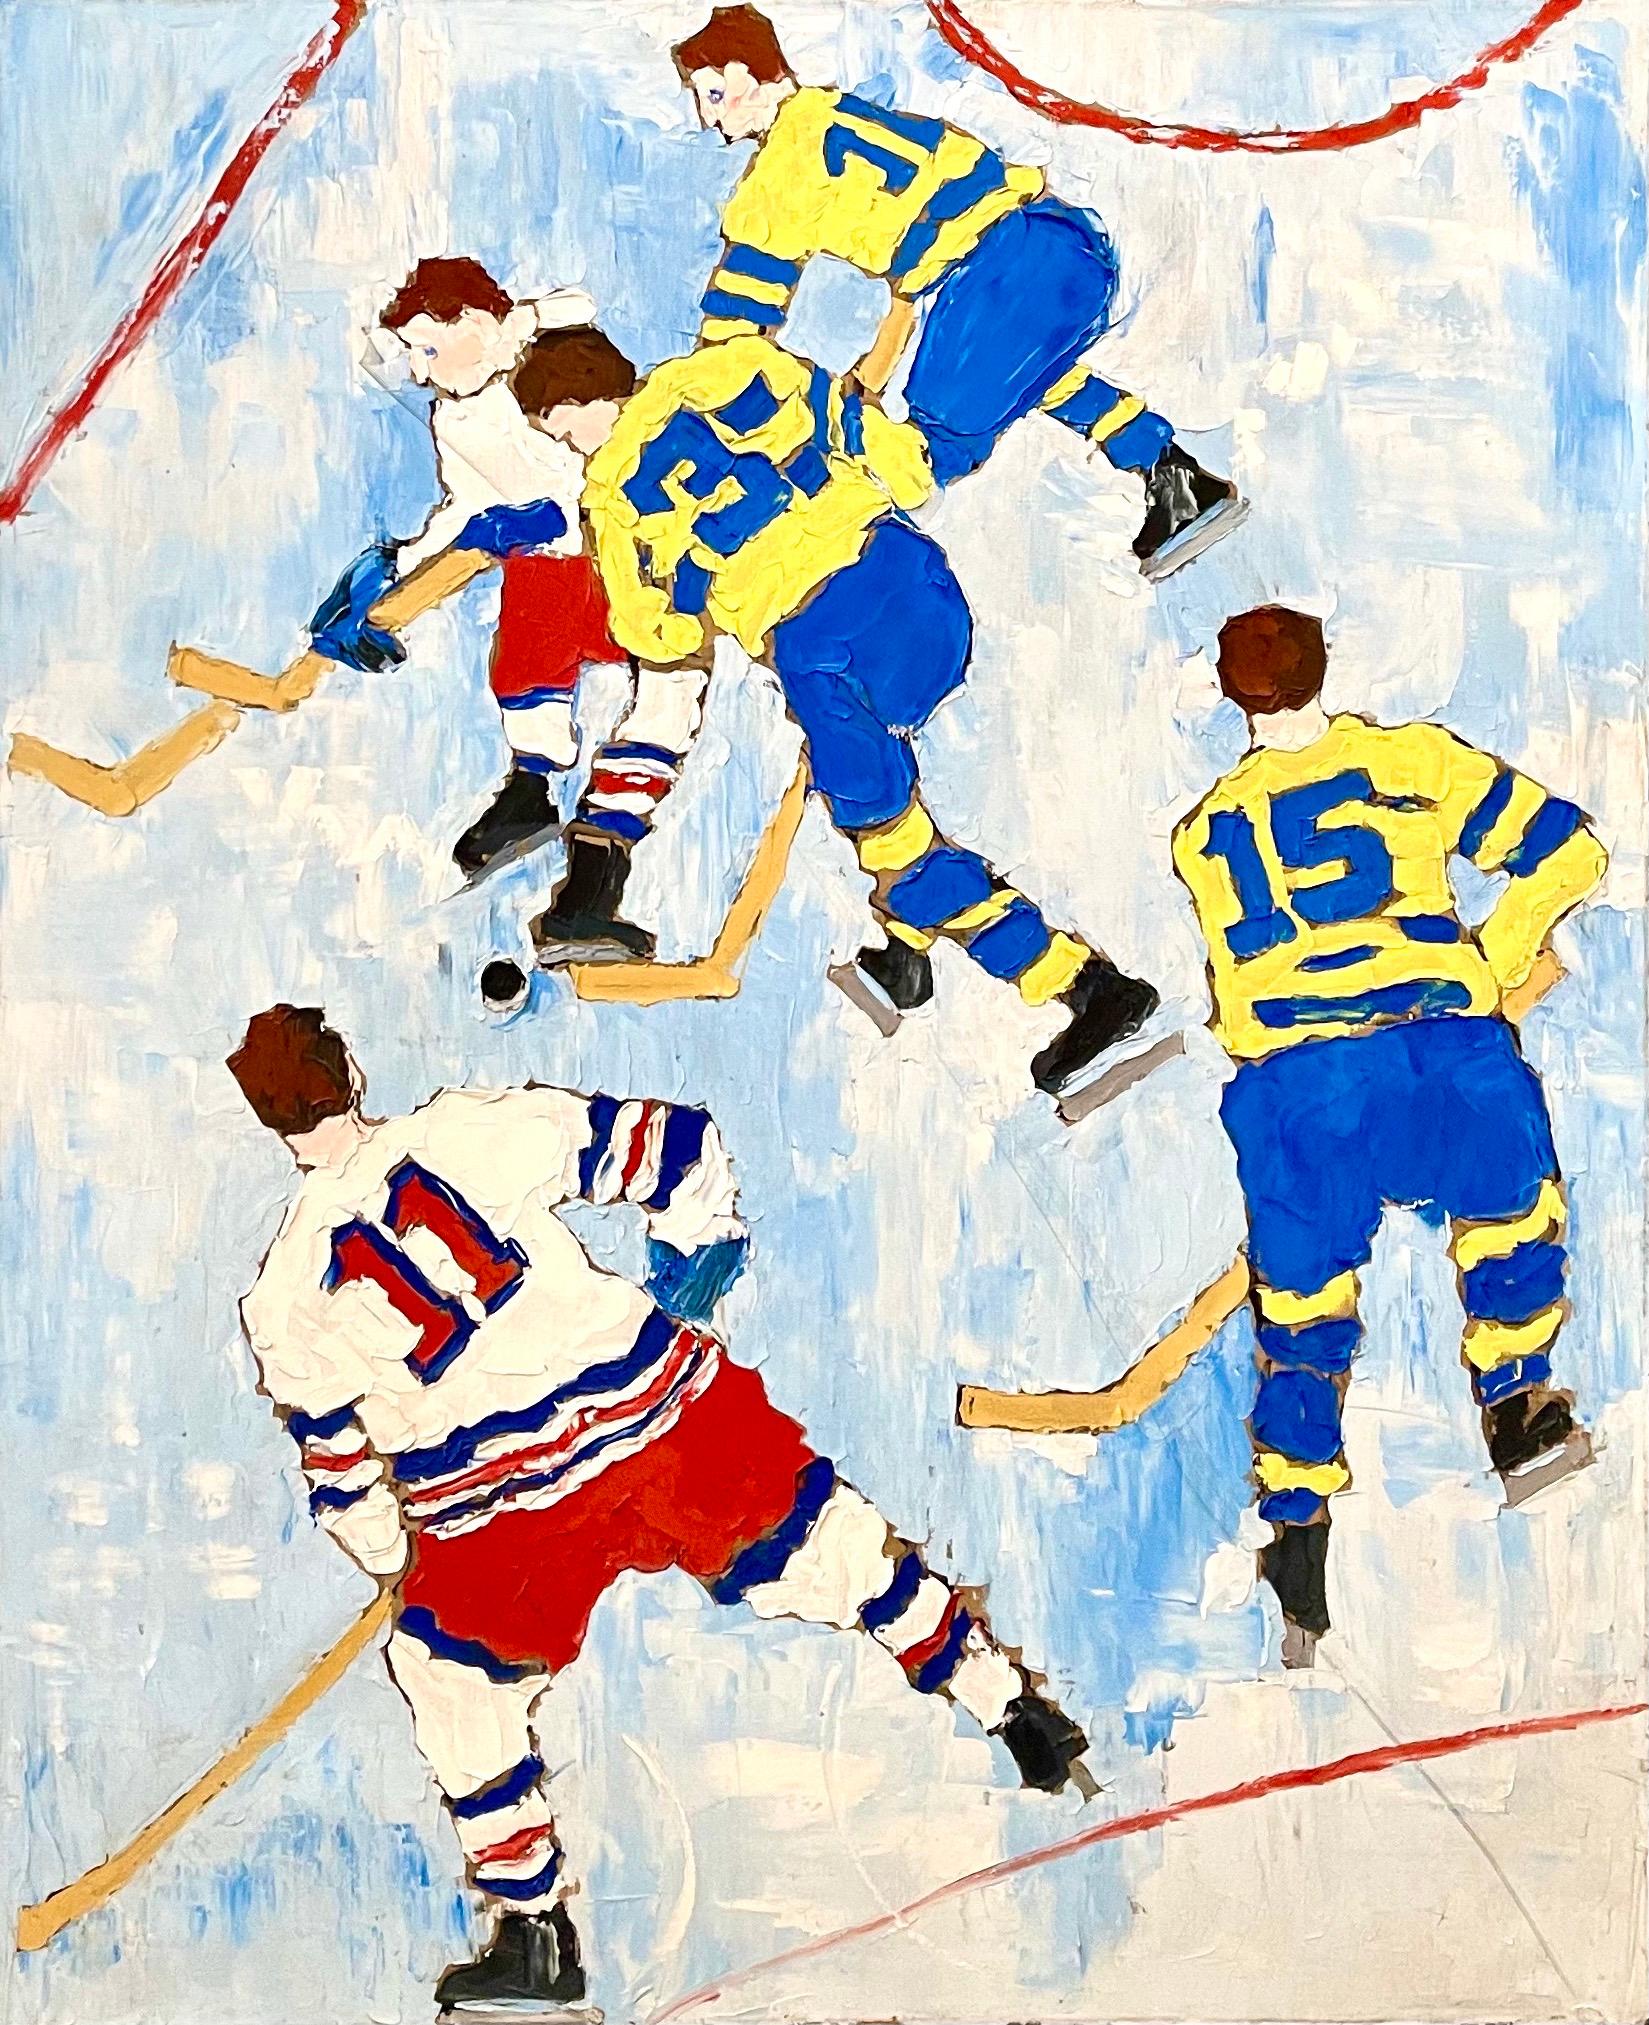 Judy Rifka (Amerikanerin, geb. 1945) 
Gemälde in Öl auf Leinen
Titel: "Eishockey IV 1990" 
mit einer Darstellung von Eishockeyspielern vor dem Hintergrund einer Eislaufbahn. 
Verso handsigniert: "Rifka, 90" 
Provenienz: Galerie Brooke